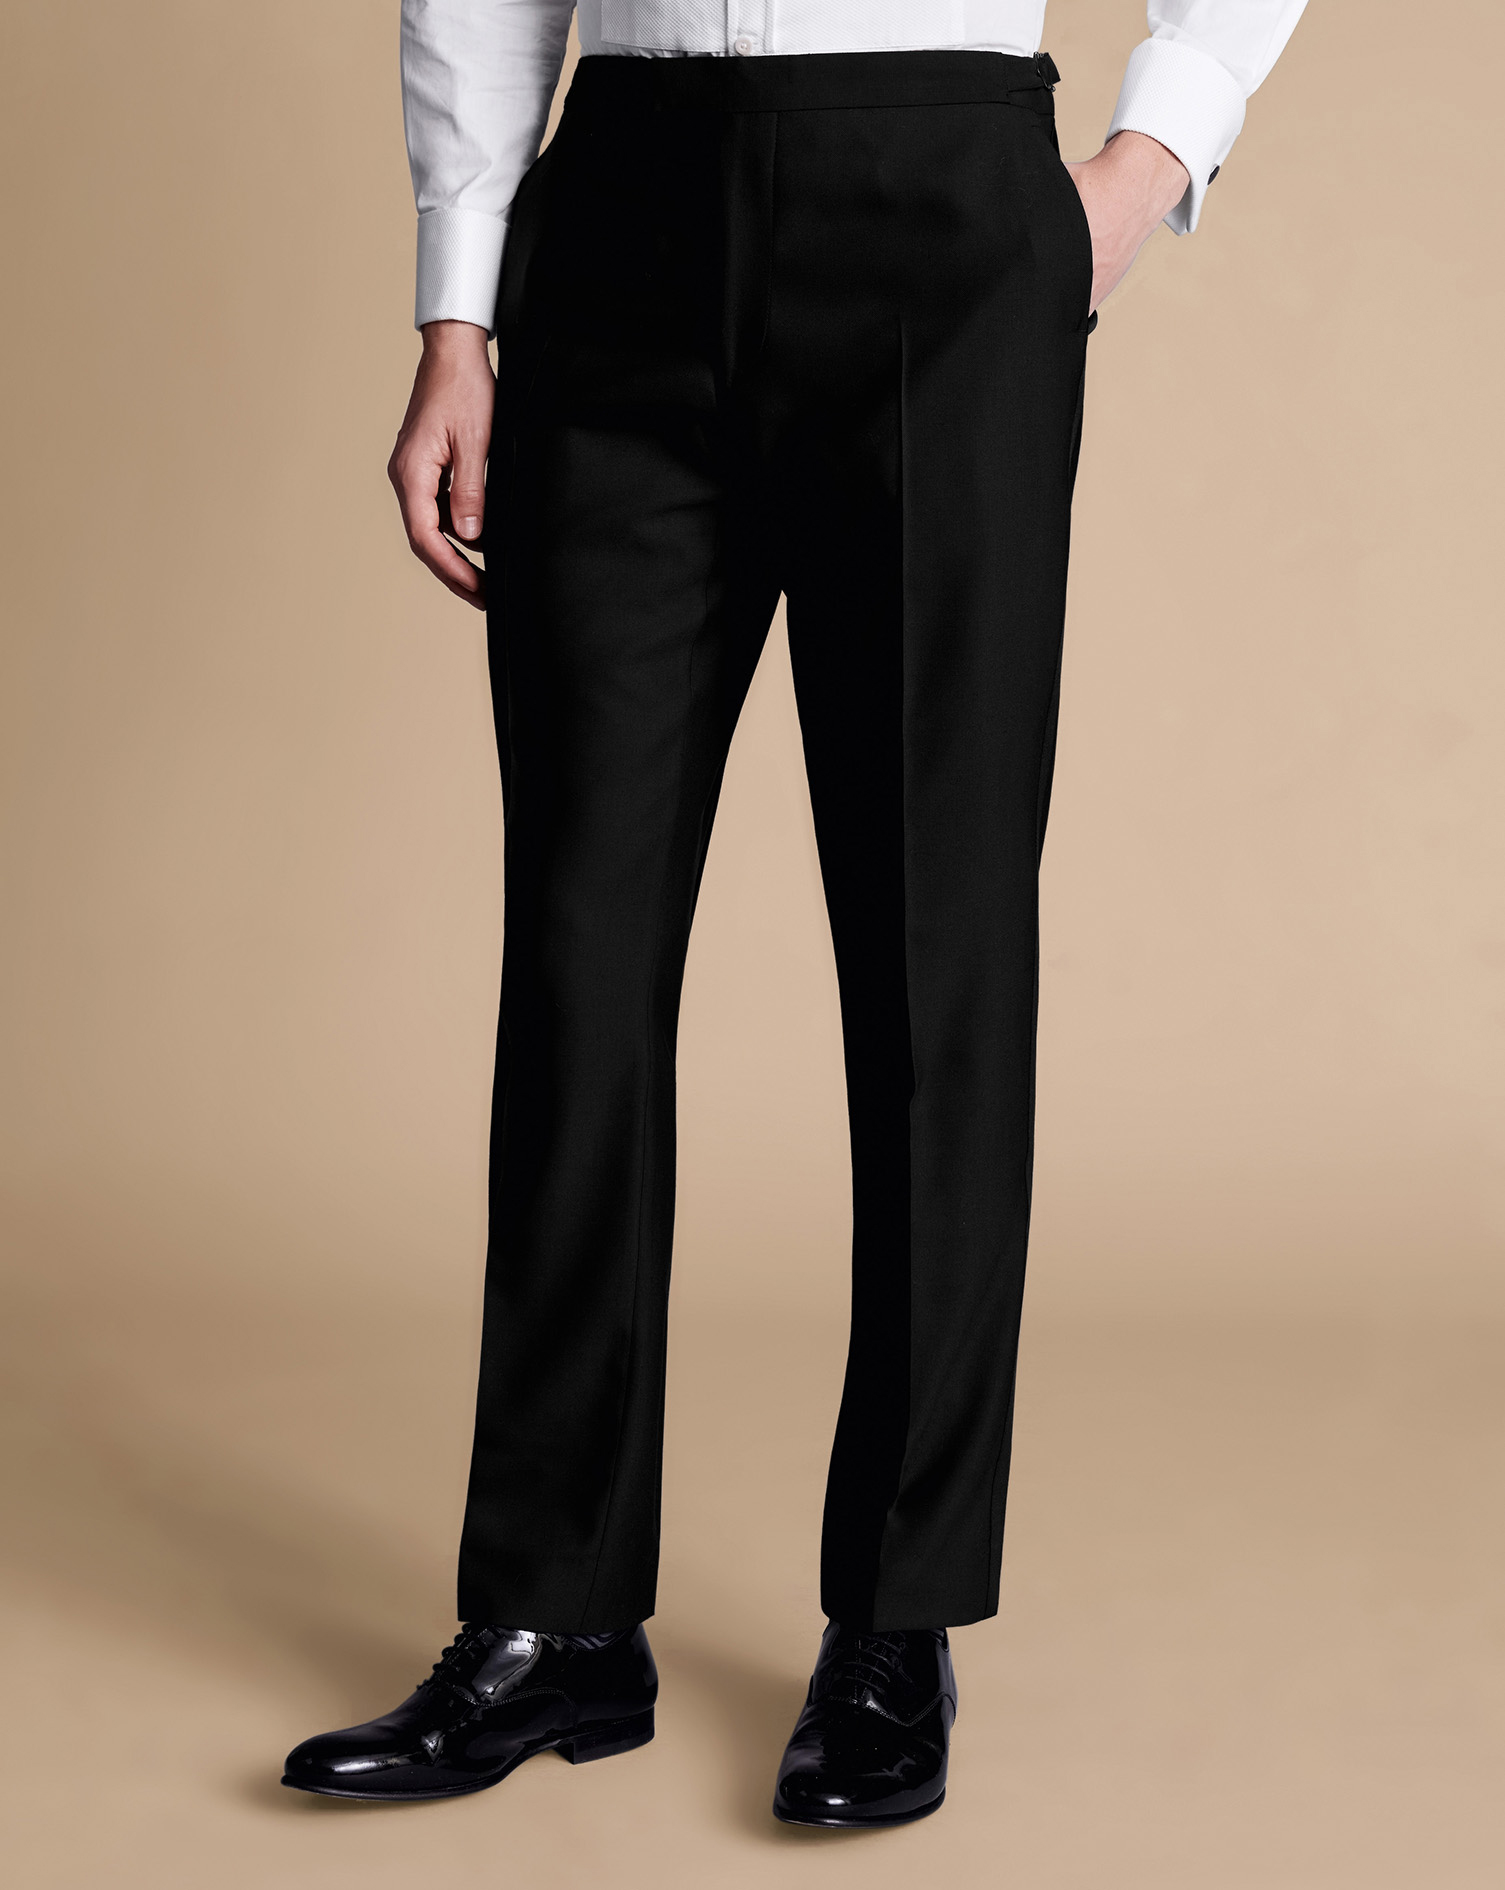 Men's Charles Tyrwhitt Dinner Suit Trousers - Black Size 30/38 Wool
